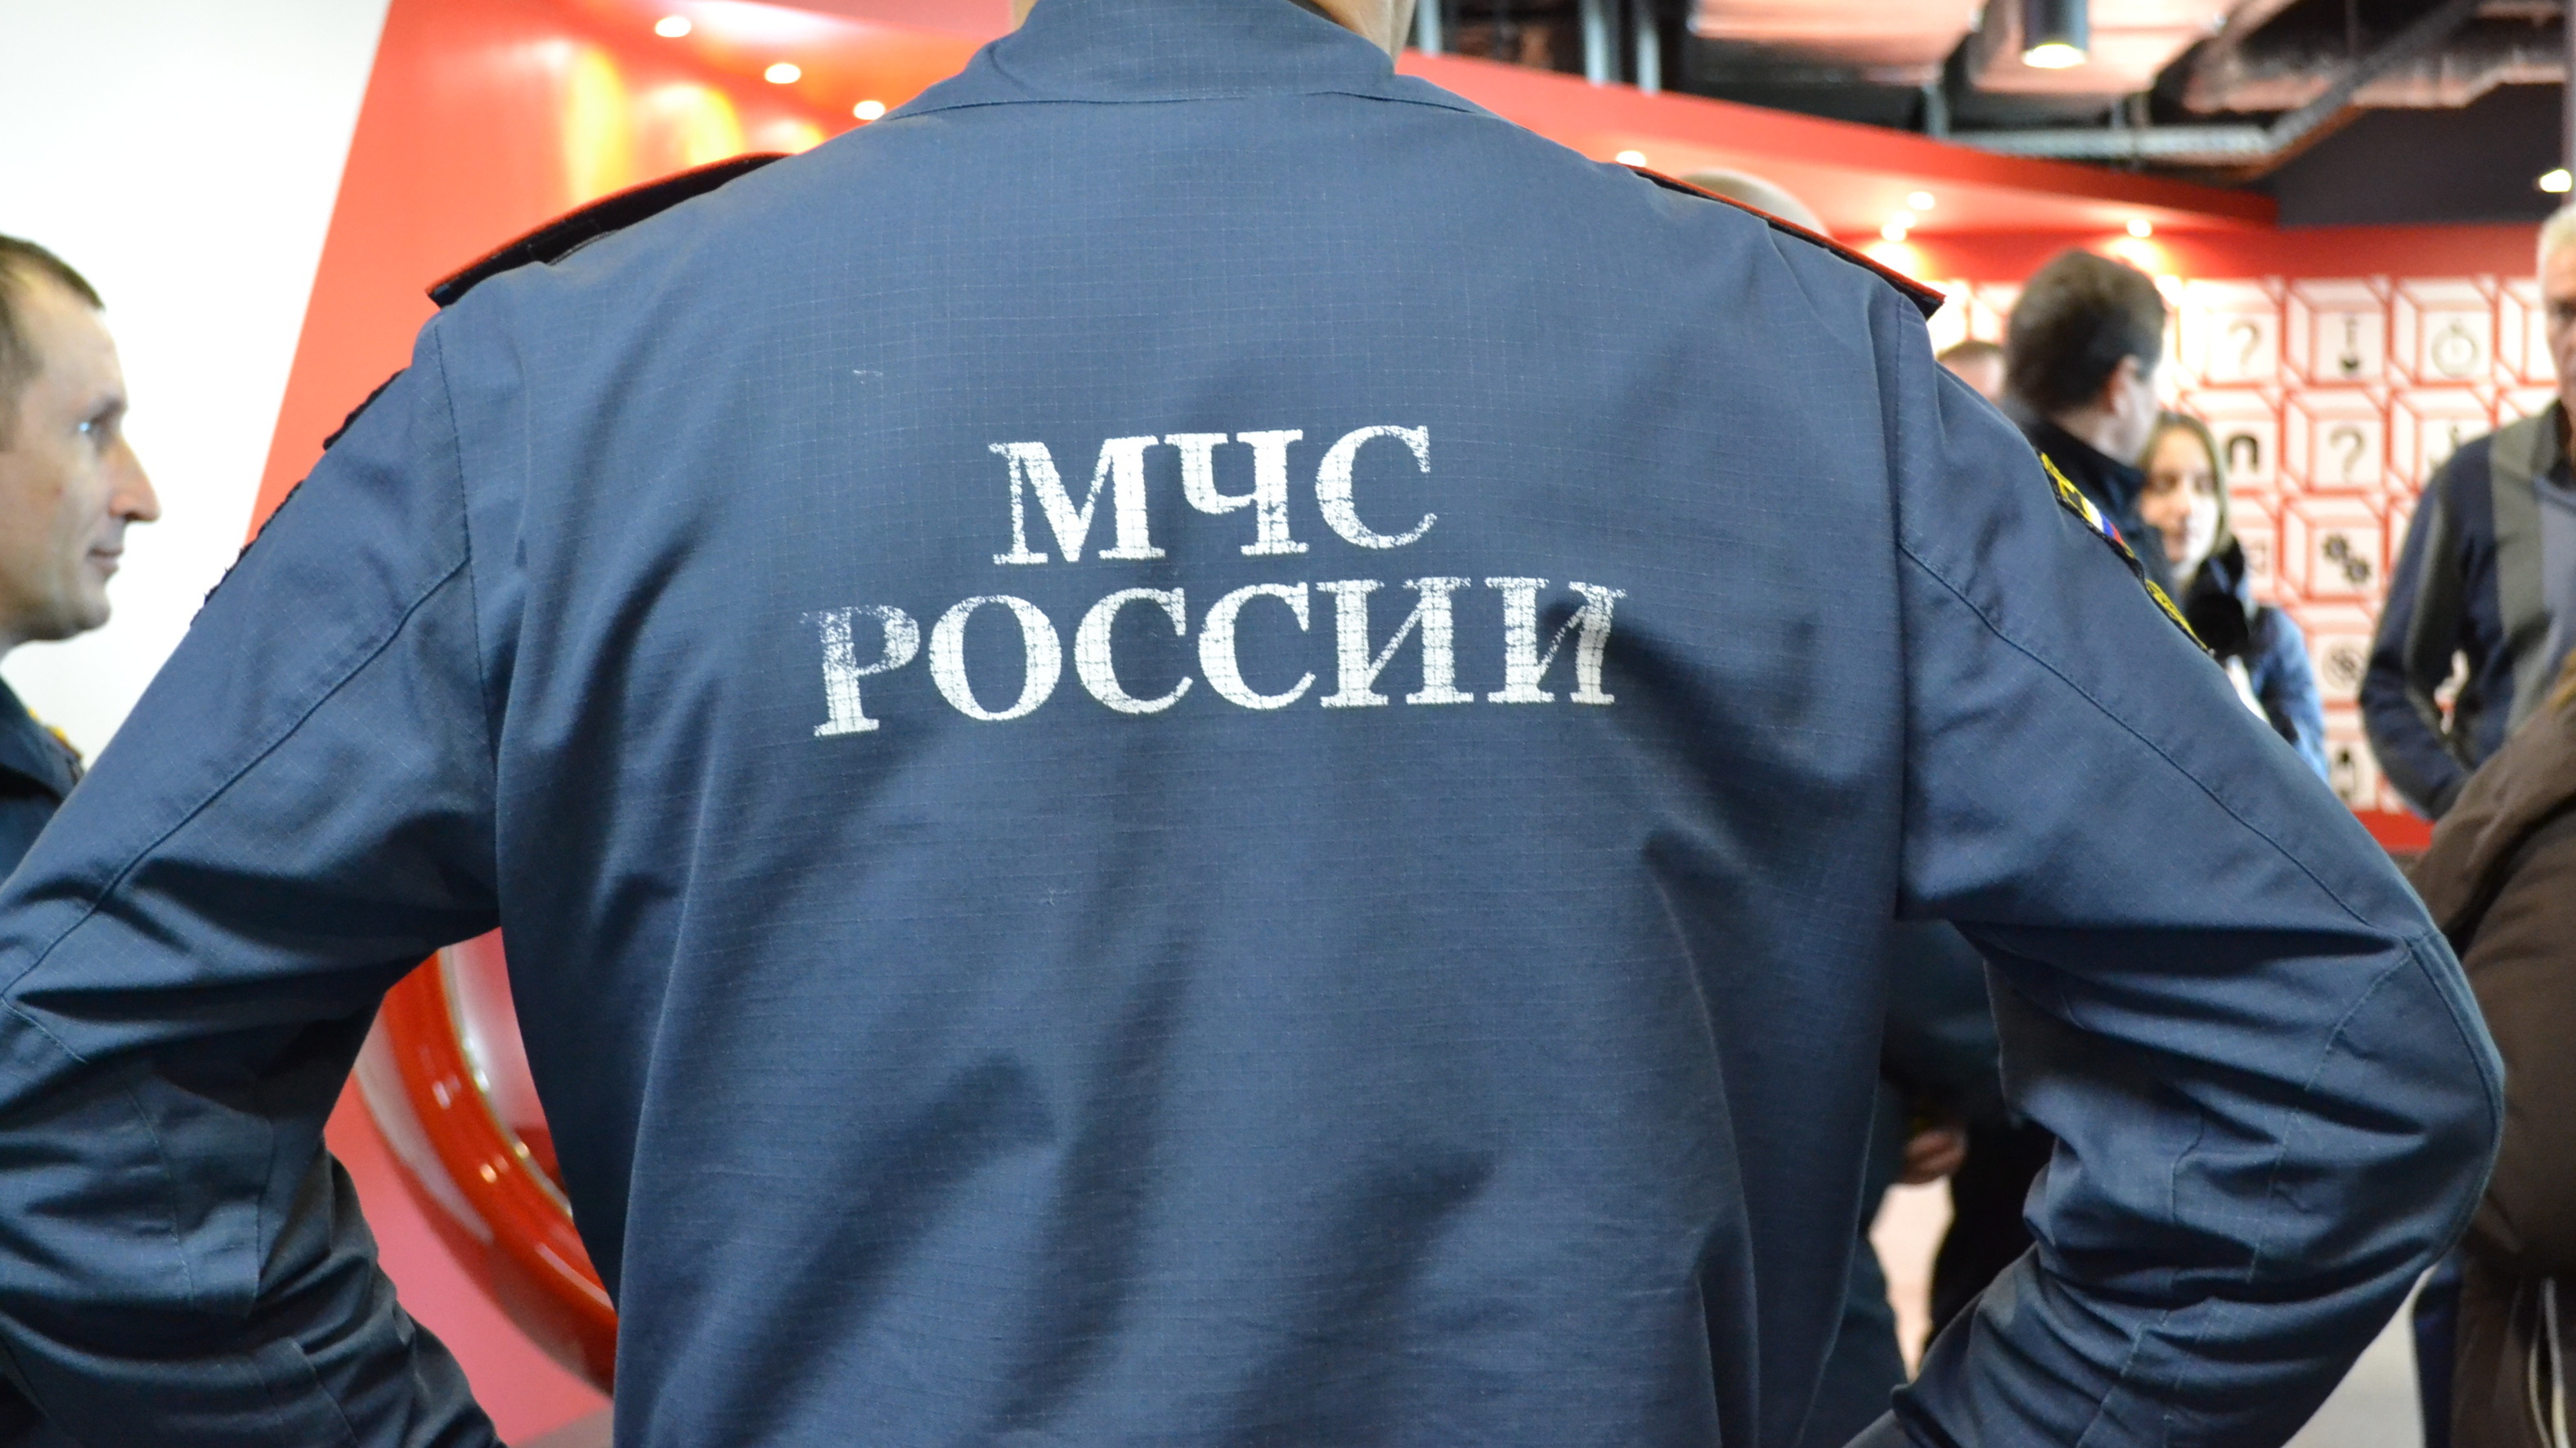 В Волгоградской области начальник МЧС пожелал сотруднику онкологии и ушел в отставку